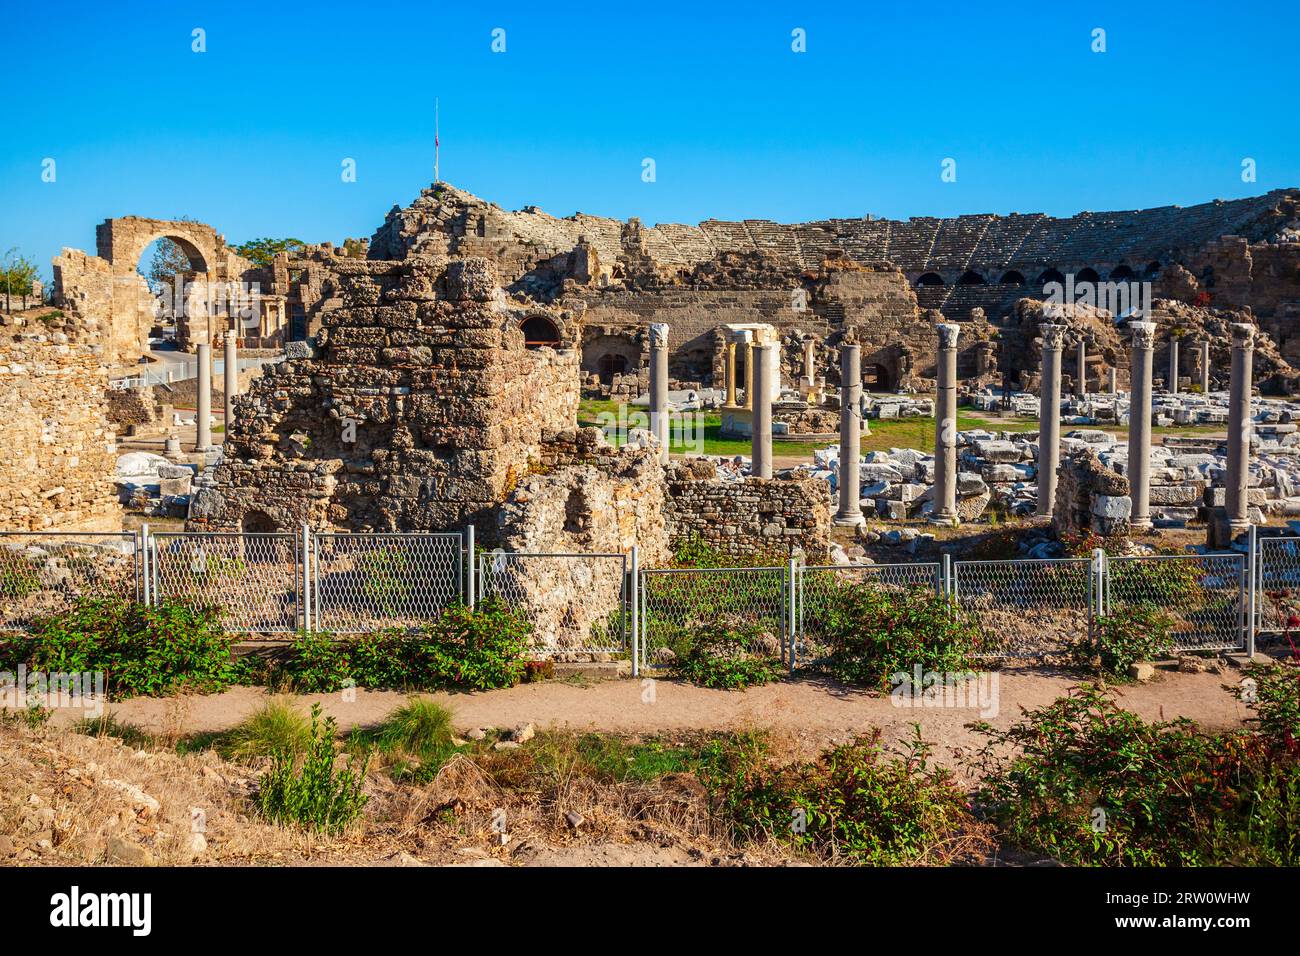 L'ancienne ville De Side dans la région d'Antalya sur la côte méditerranéenne de la Turquie. Banque D'Images